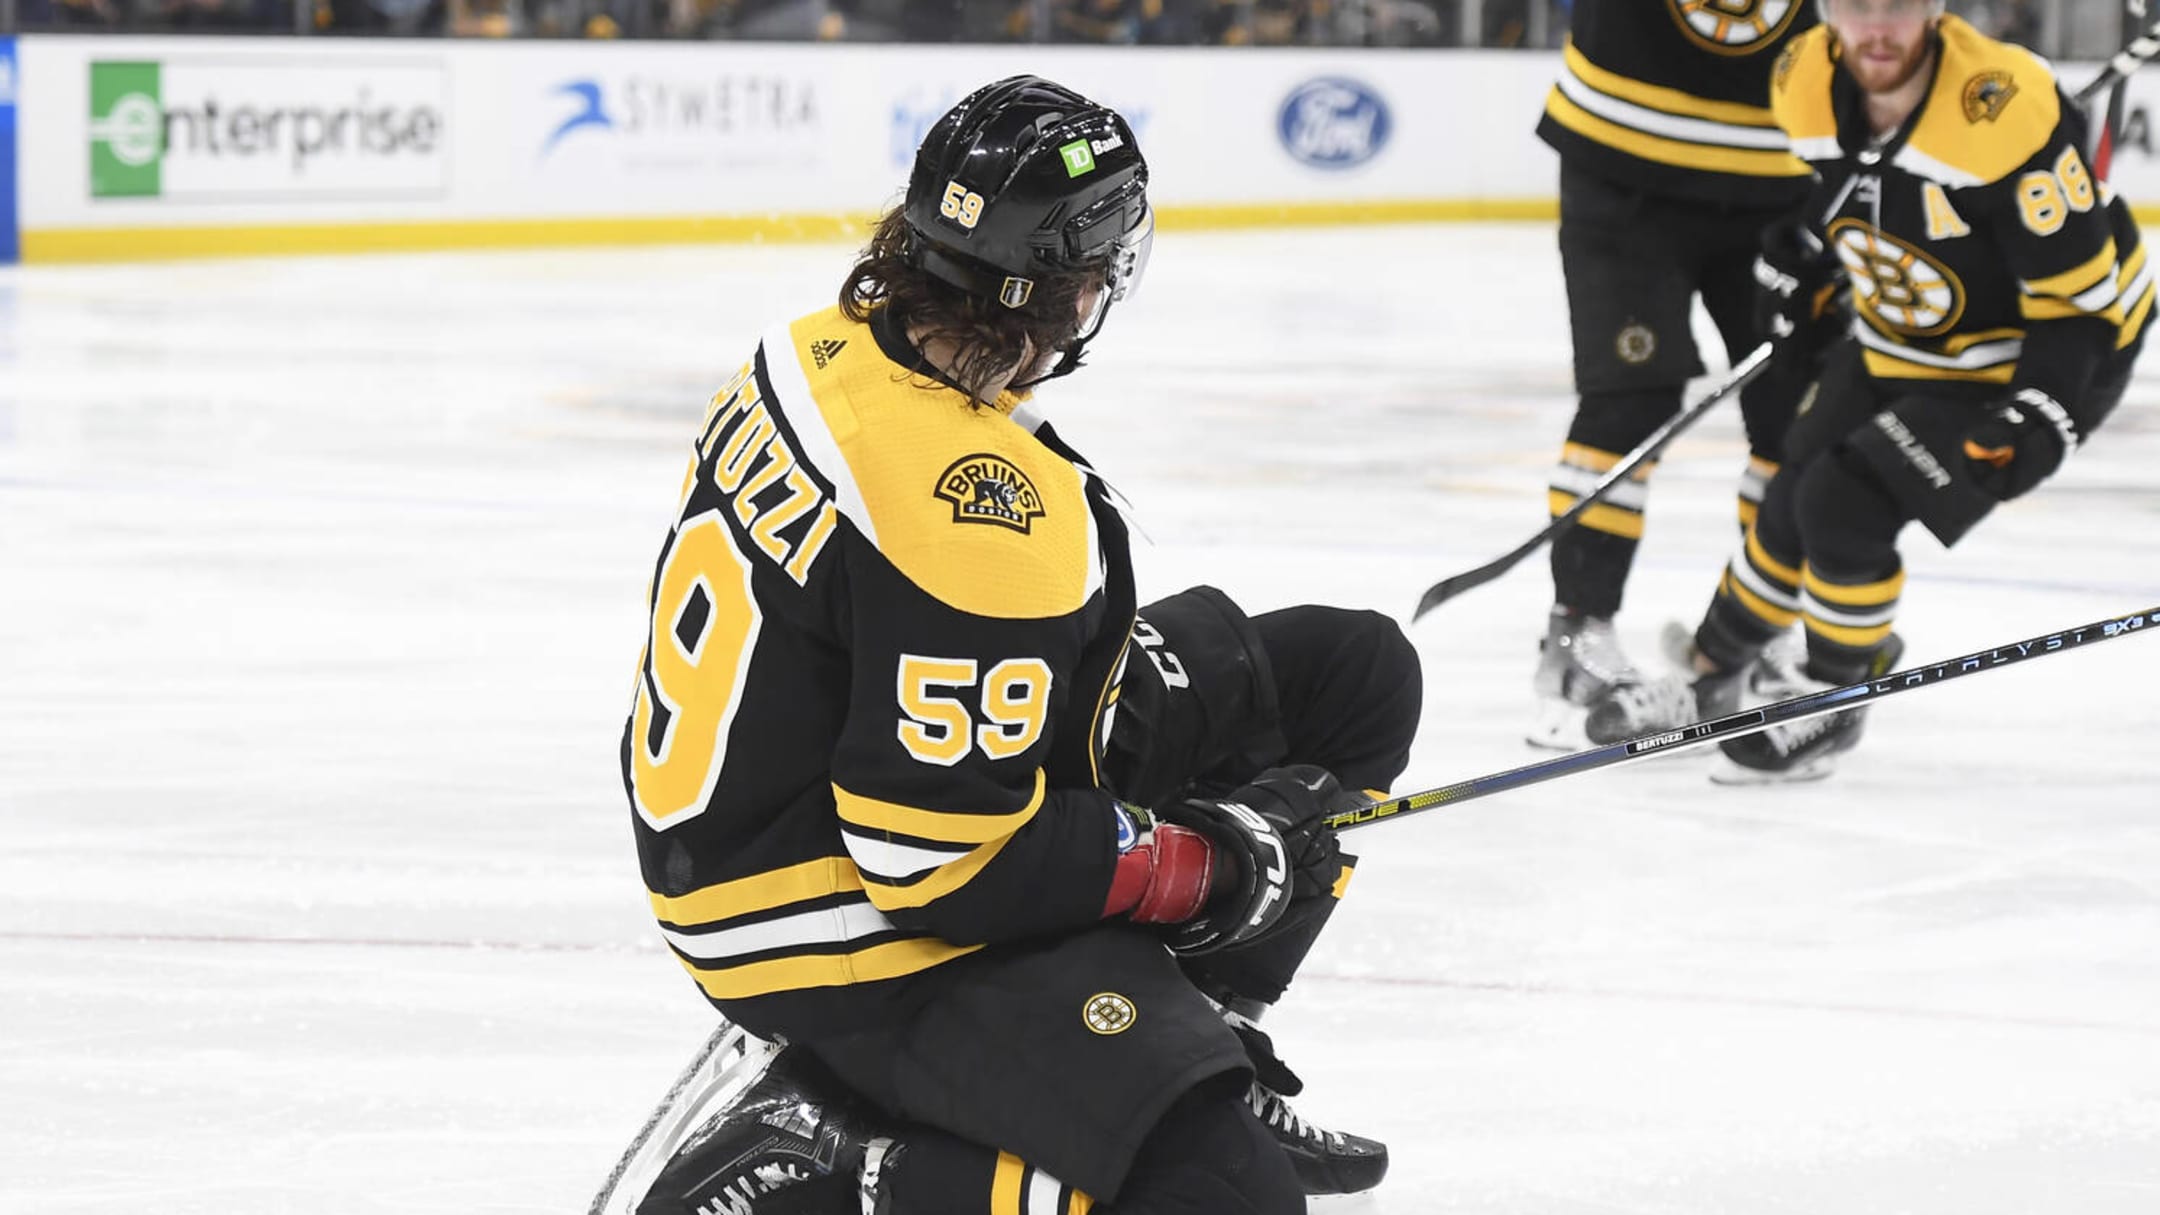 Bruins Daily: Hathaway, Bertuzzi Updates; NHL News And Rumors